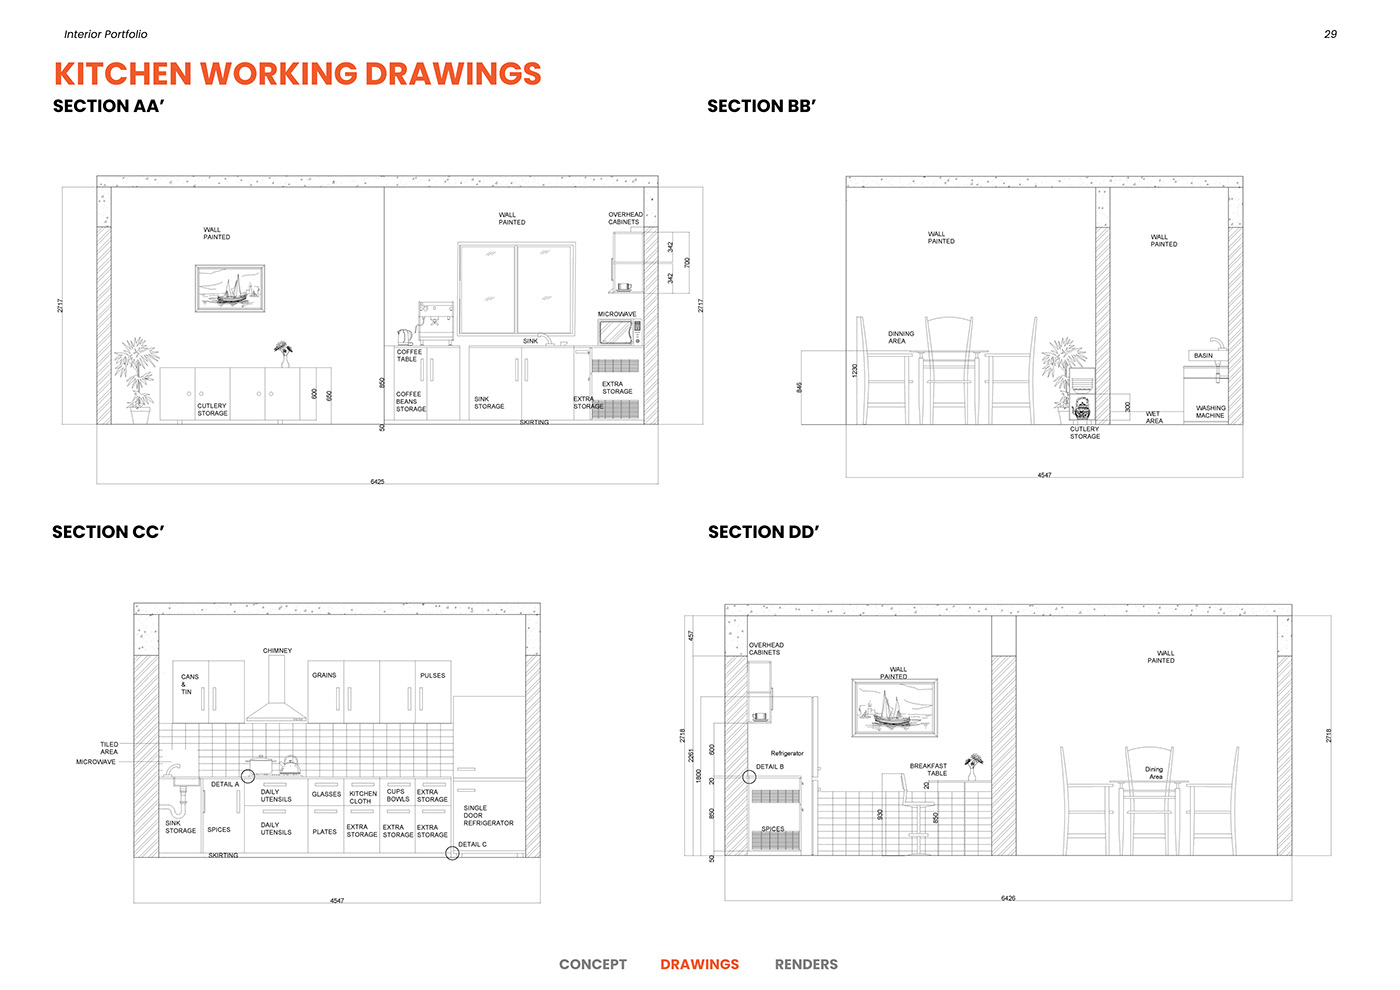 interior design  Interior architecture Render drawings Portfolio Design Resume CV residential Retail furniture portfolio